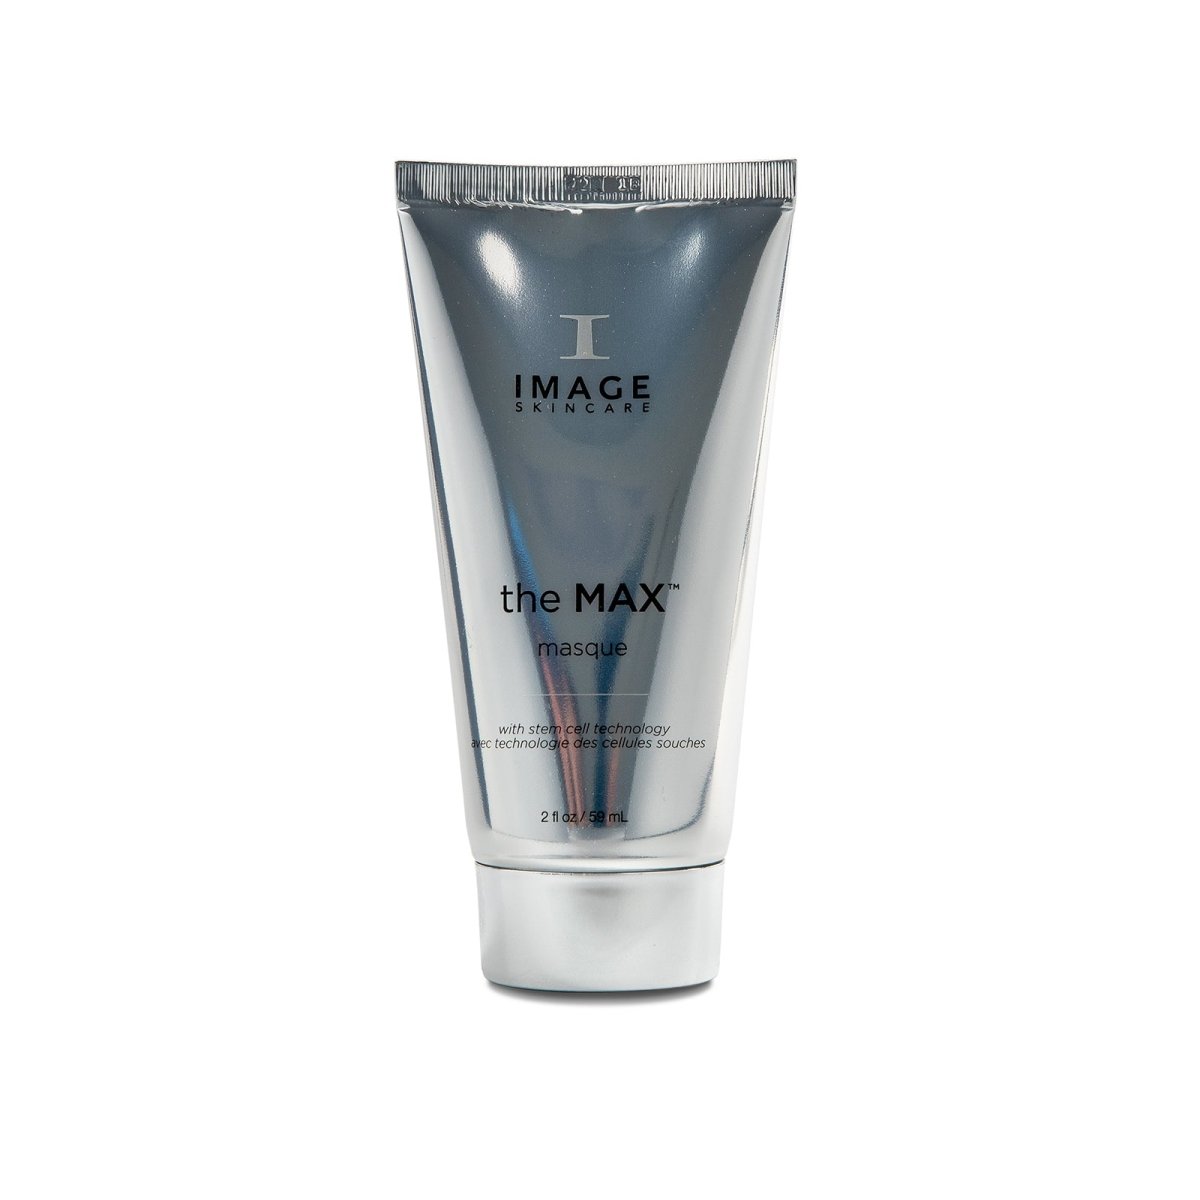 IMAGE Skincare The MAX™ Masque - SkincareEssentials